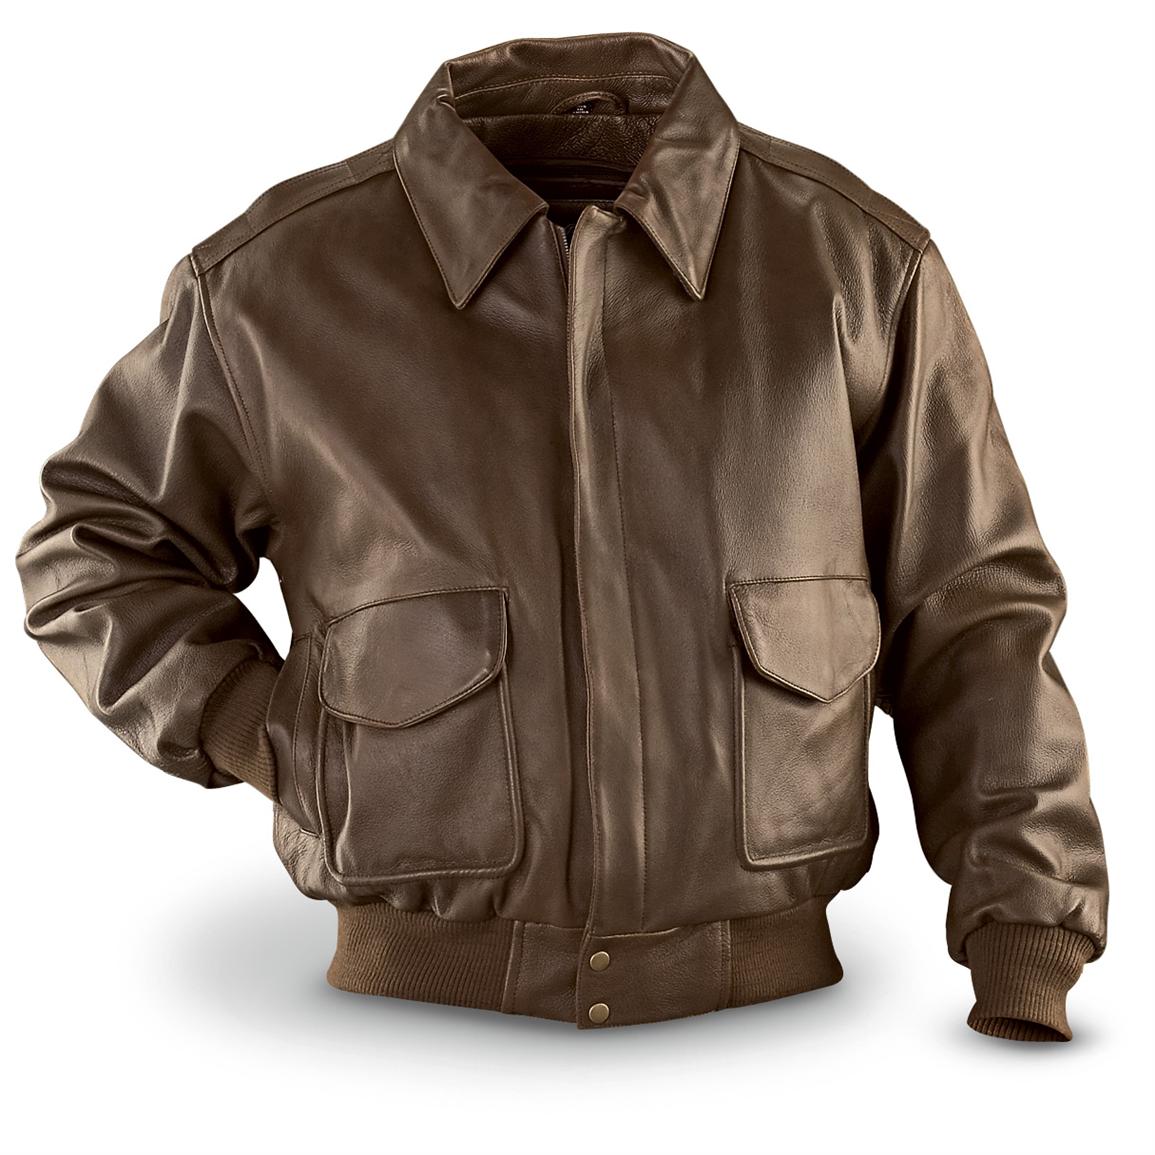 Vintage Bomber Leather Jacket 81